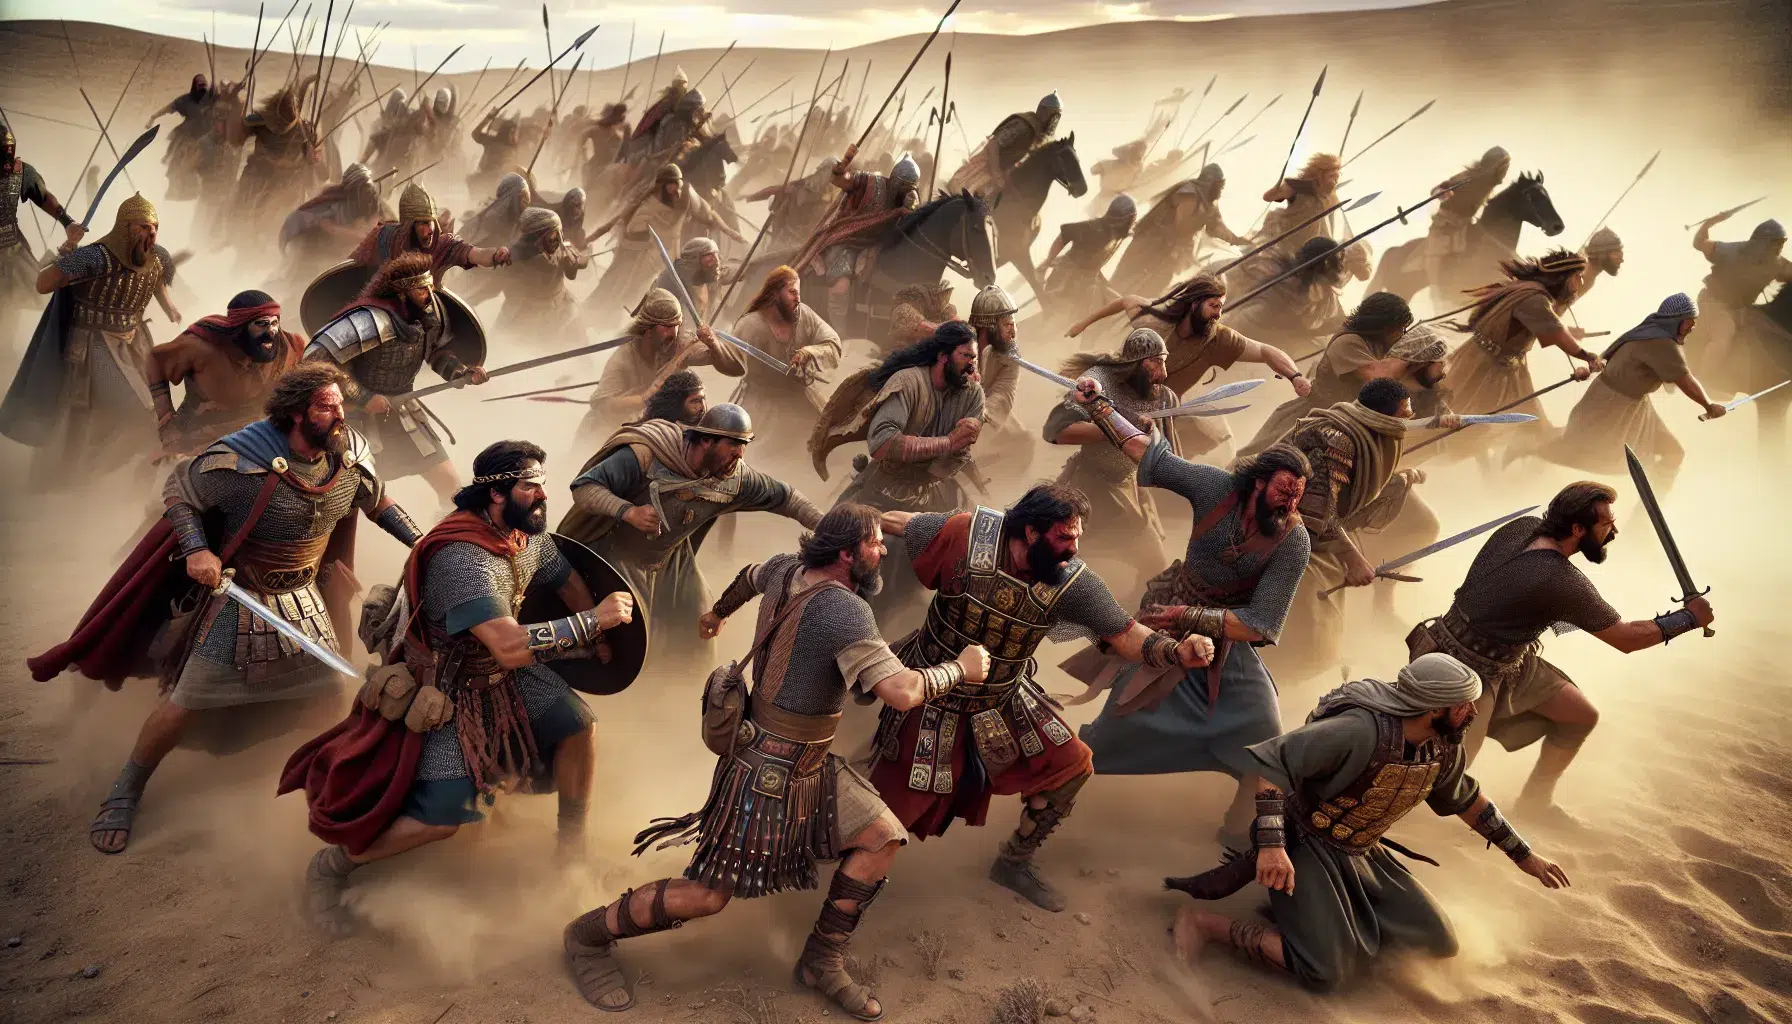 Representación artística de un grupo de guerreros bíblicos enfrentando a los amalecitas en una batalla histórica.